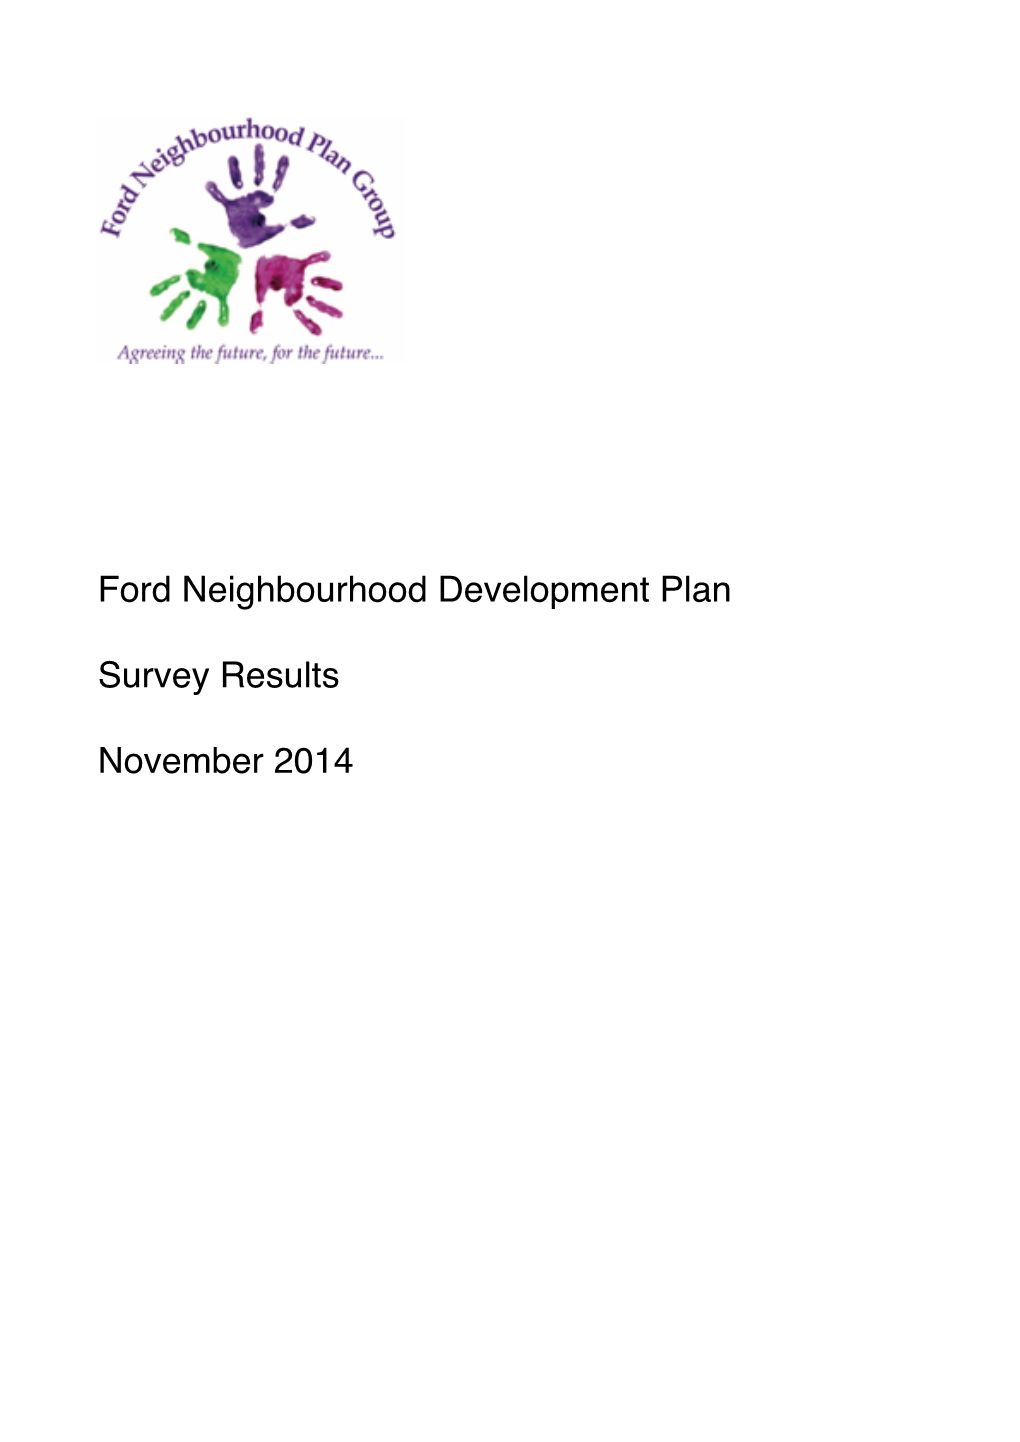 Ford Neighbourhood Development Plan Survey Results November 2014